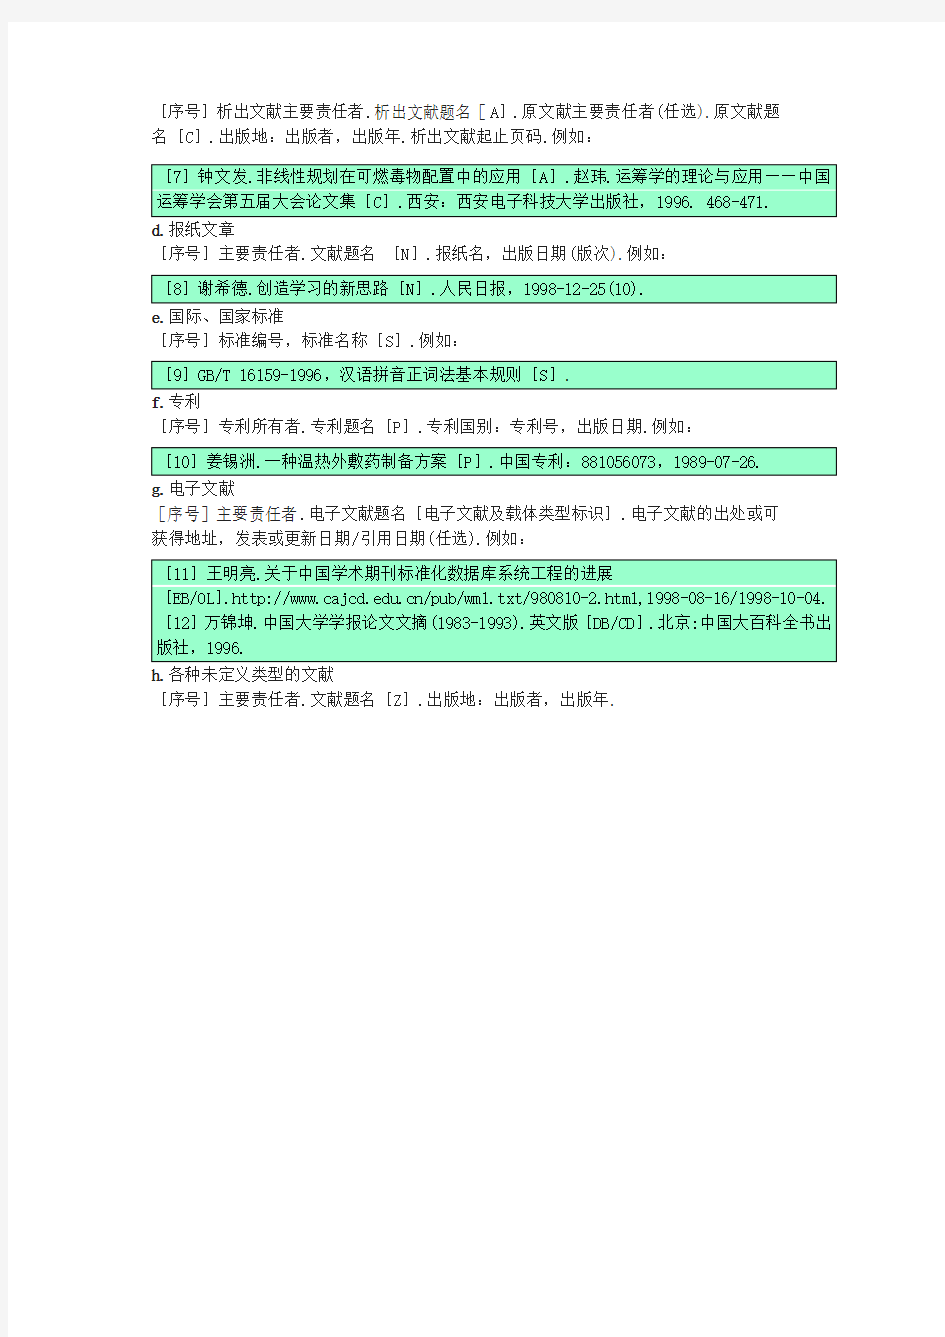 中文引用格式